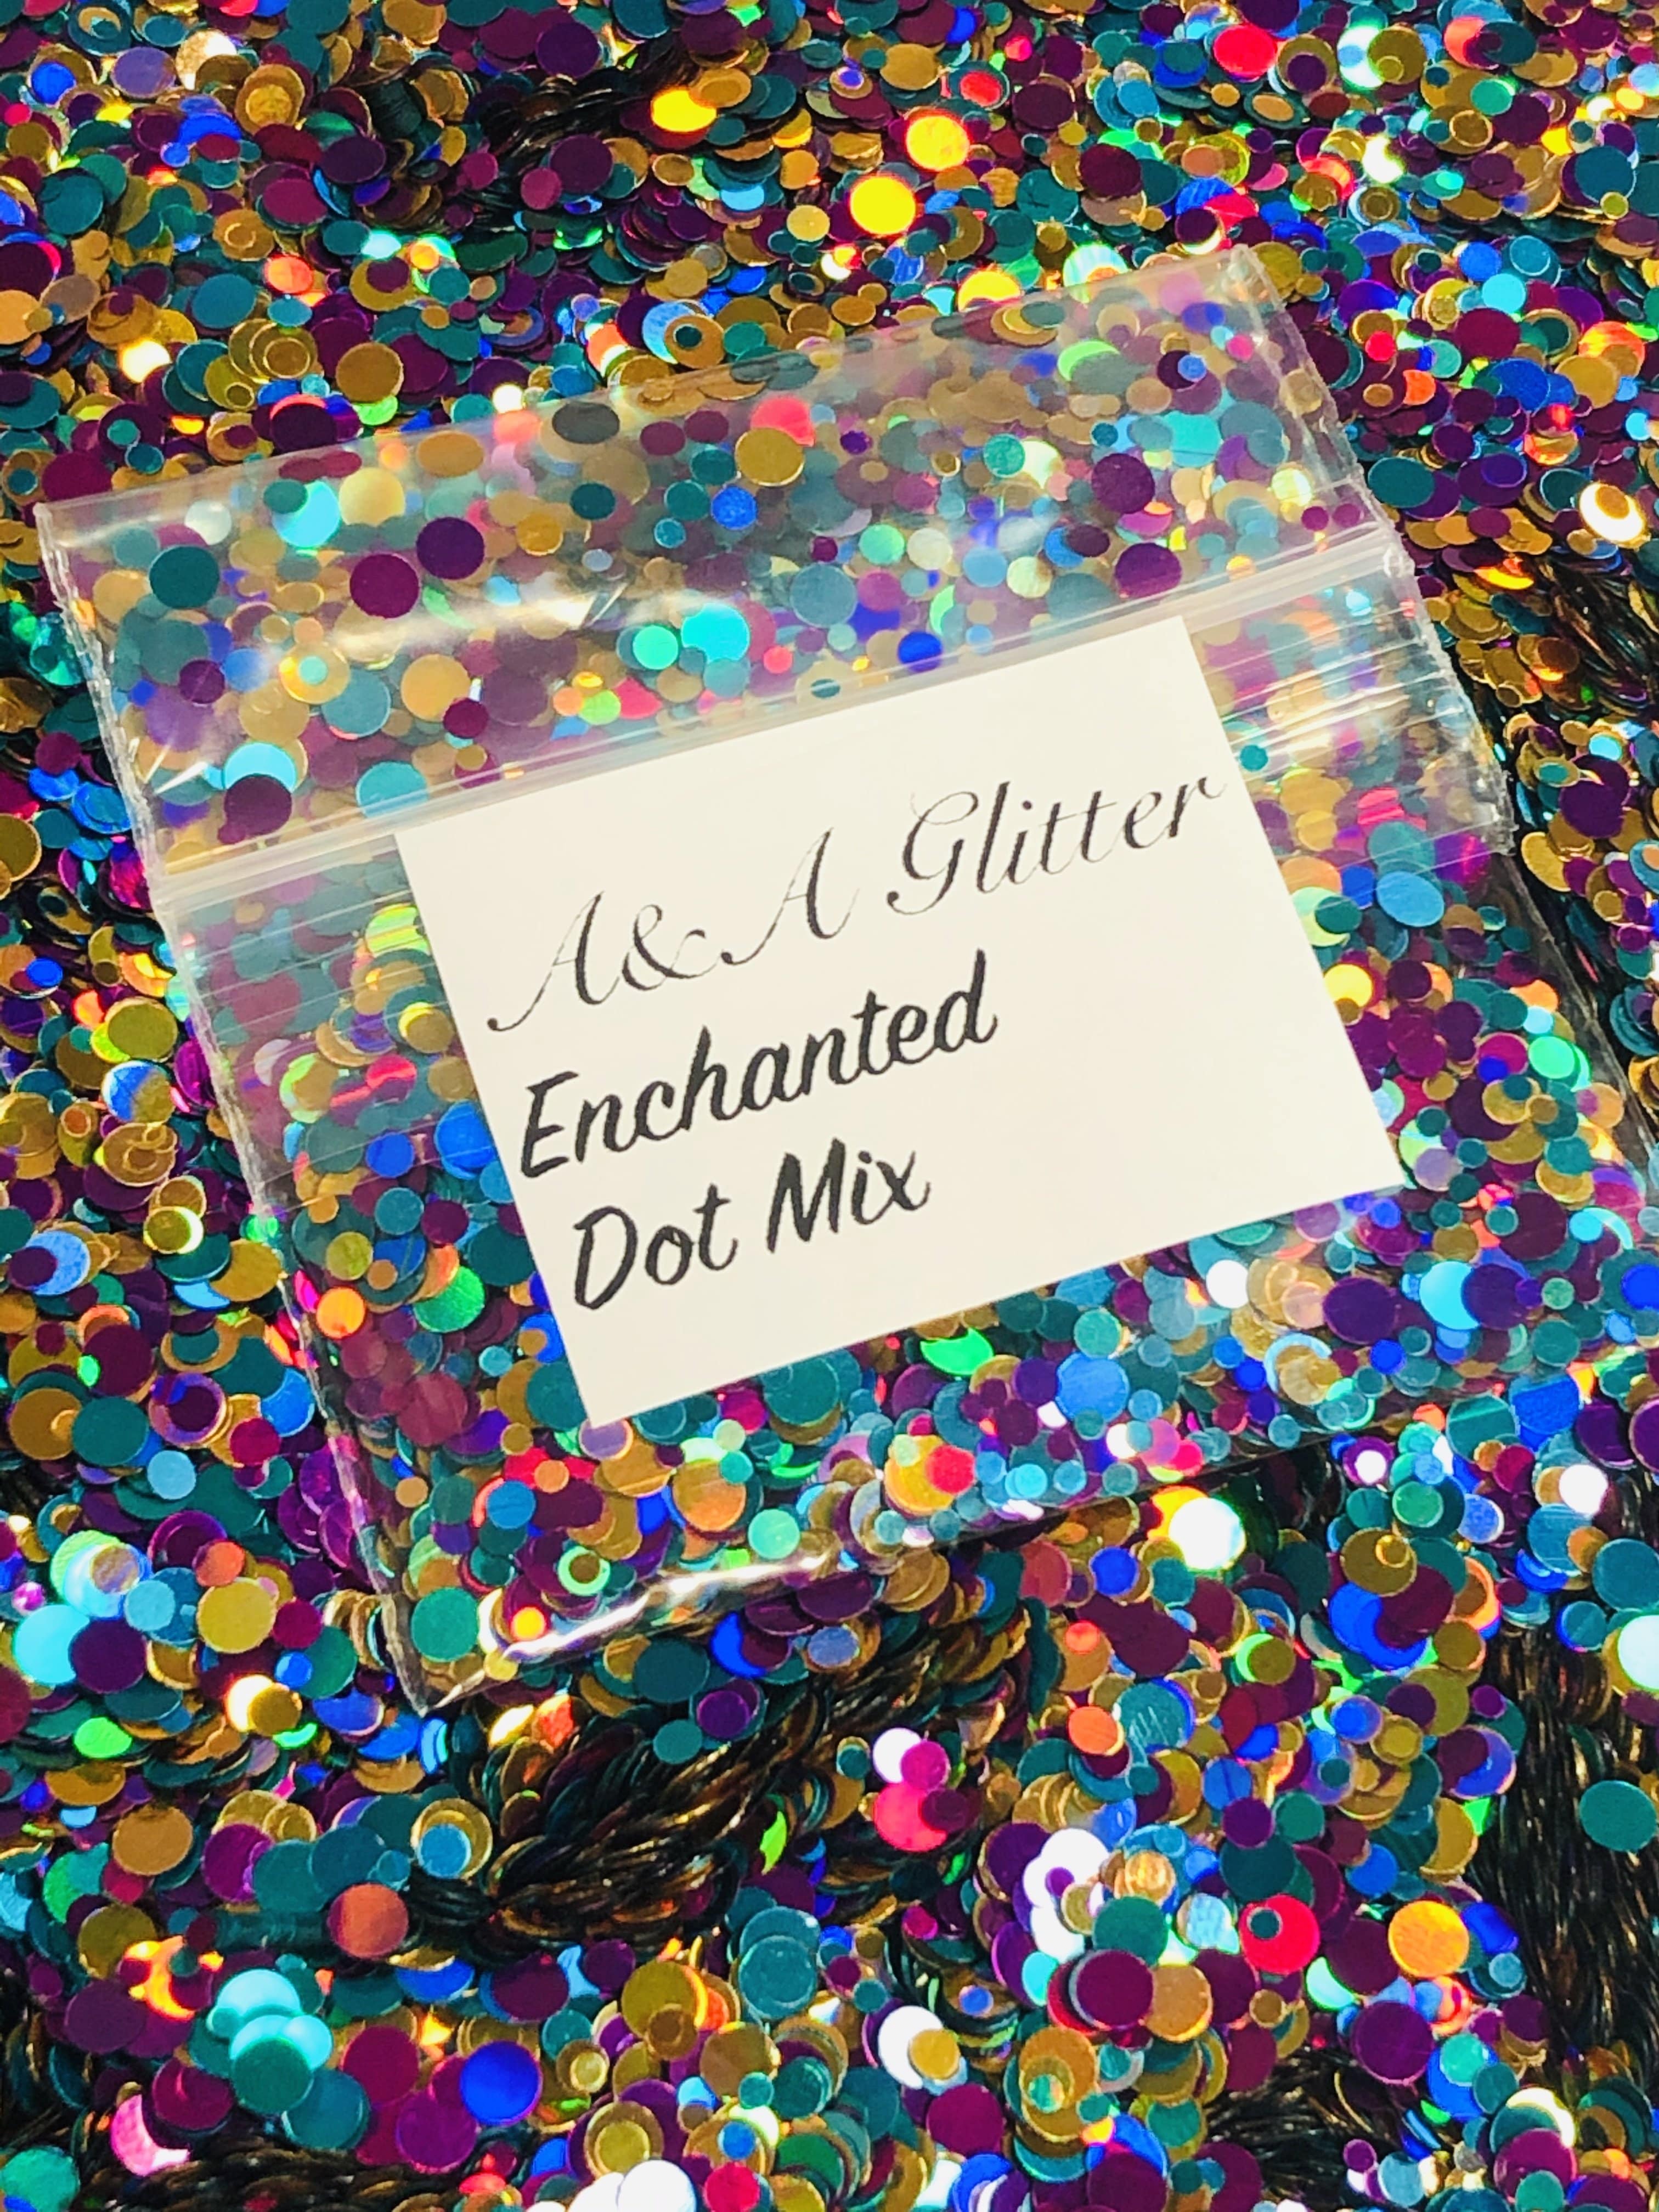 Enchanted - Dot Mix